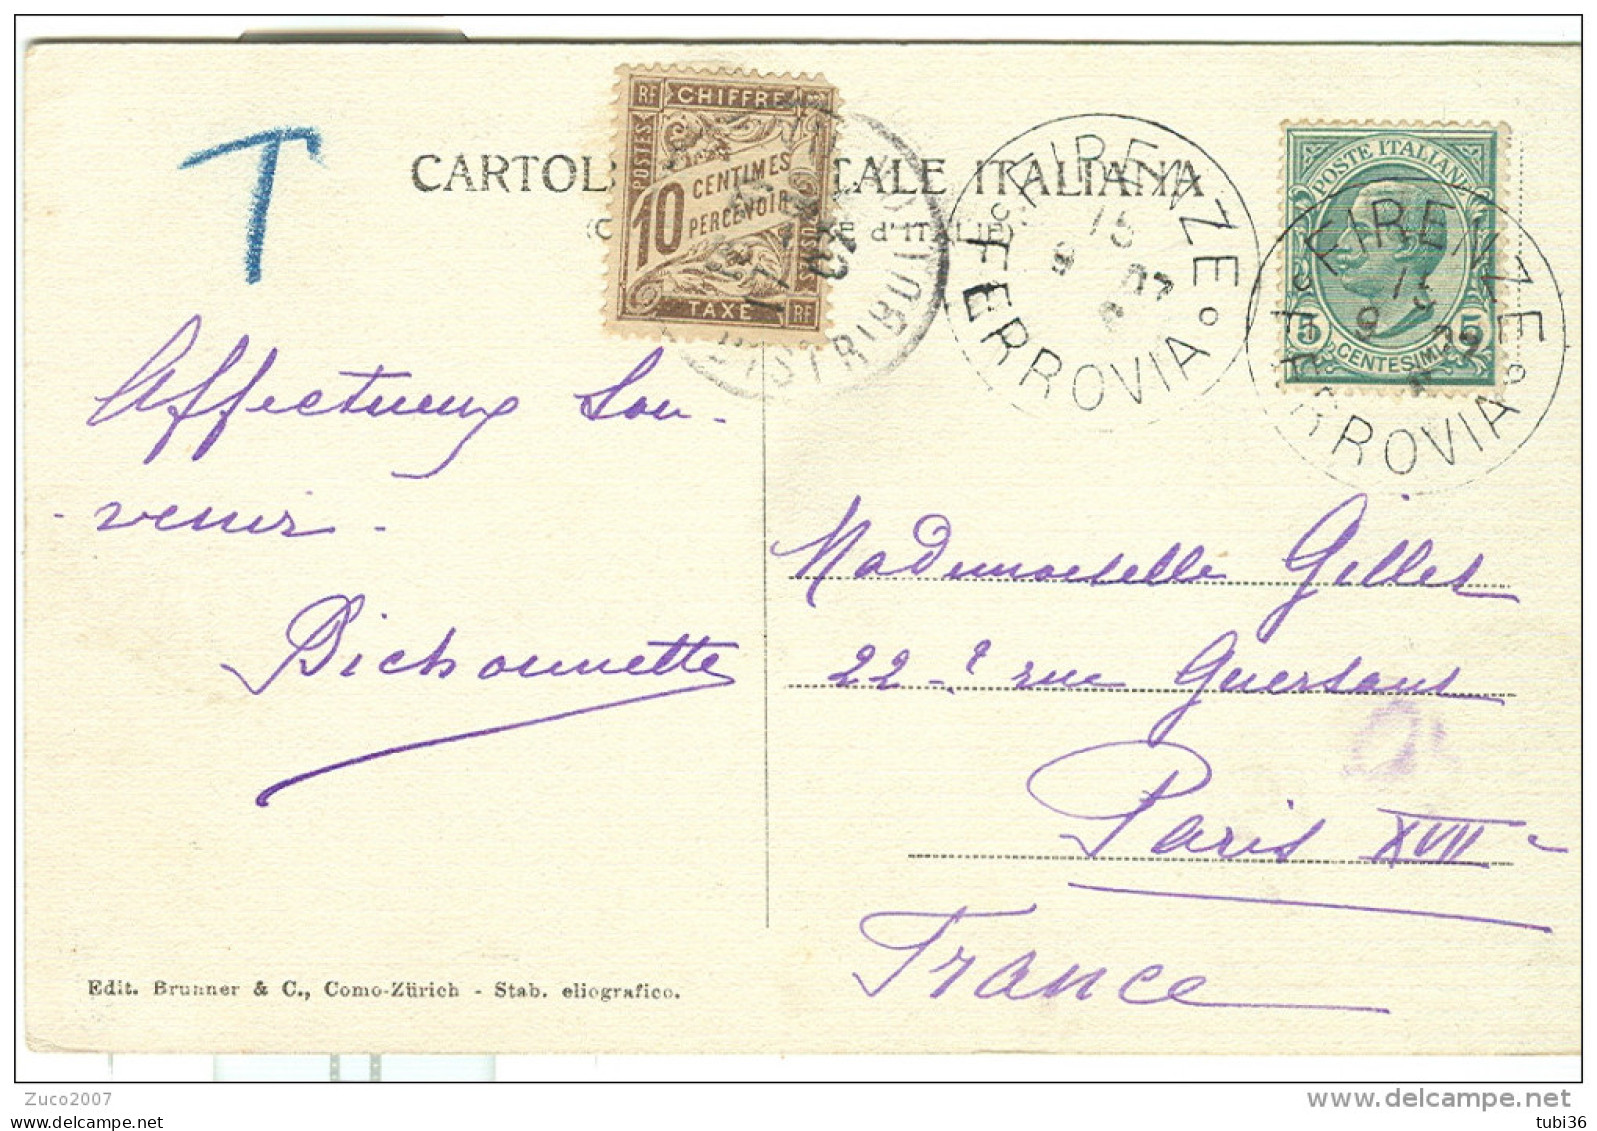 LEONI Cent.5 SU CARTOLINA B/N VIAGGIATA  1907, FIRENZE-PARIGI, TASSATA FRANCIA Cent.10,FIRENZE BATTISTERO - Taxe